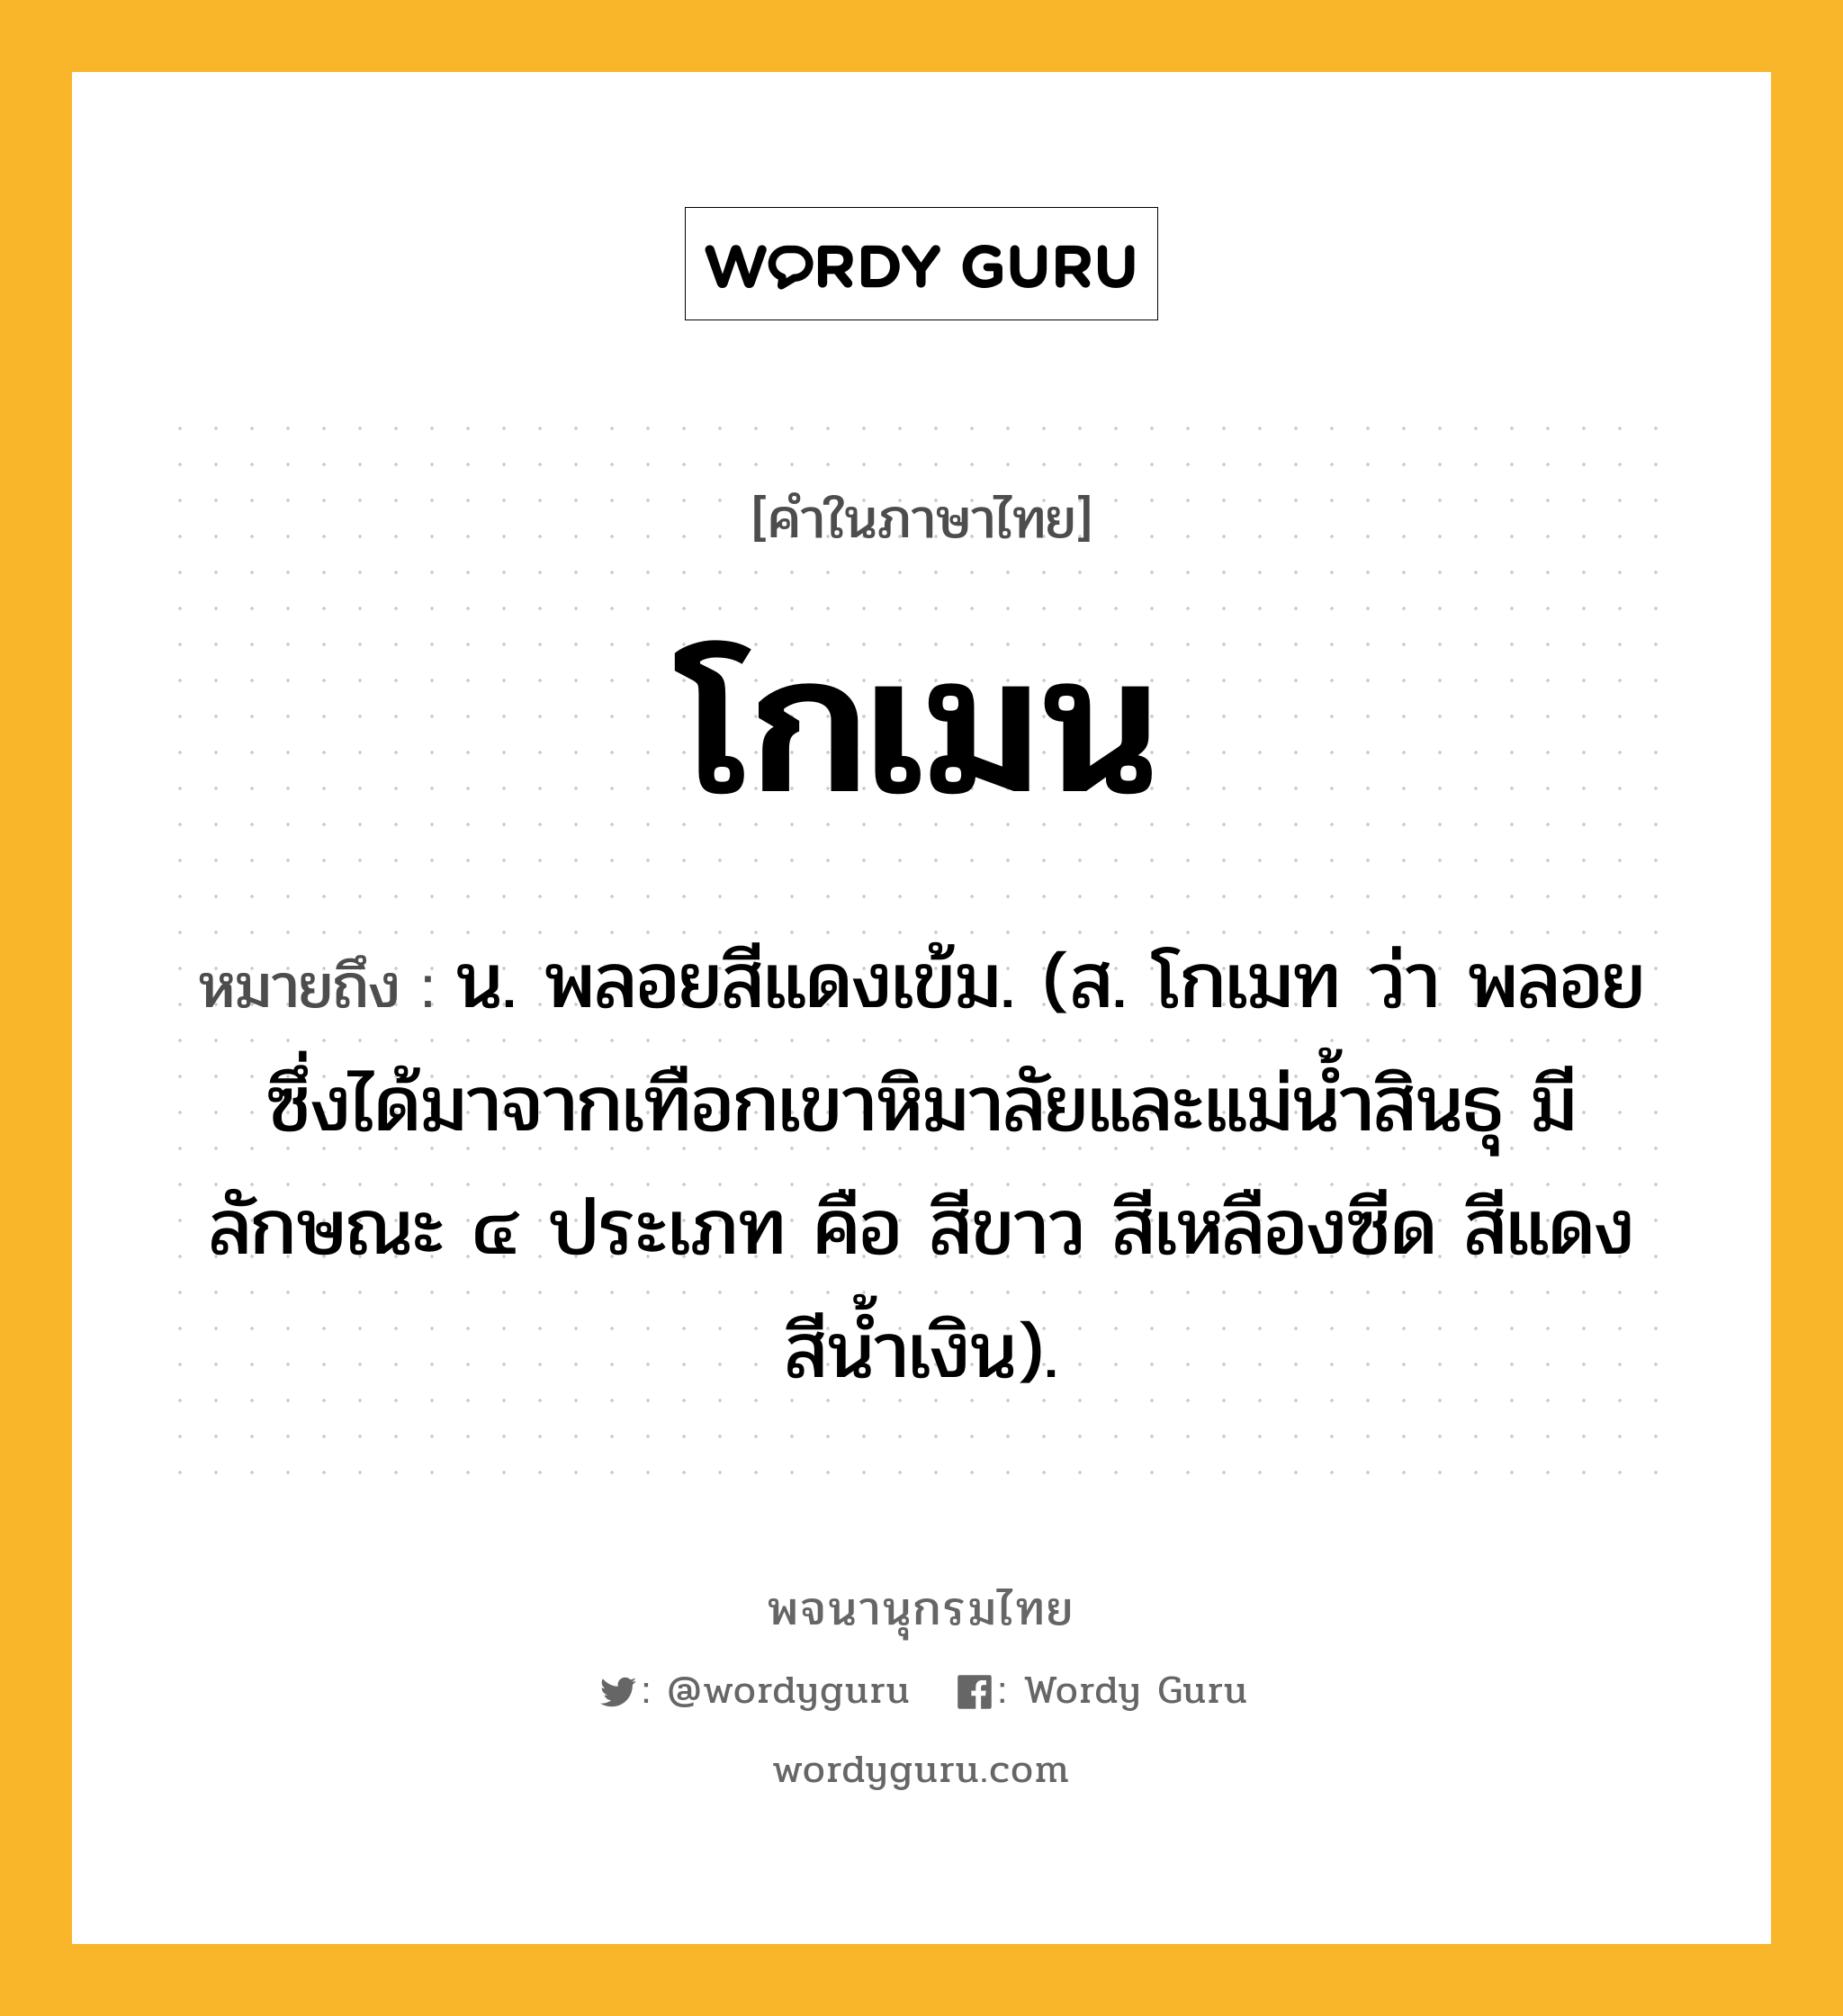 โกเมน หมายถึงอะไร?, คำในภาษาไทย โกเมน หมายถึง น. พลอยสีแดงเข้ม. (ส. โกเมท ว่า พลอยซึ่งได้มาจากเทือกเขาหิมาลัยและแม่นํ้าสินธุ มีลักษณะ ๔ ประเภท คือ สีขาว สีเหลืองซีด สีแดง สีนํ้าเงิน).